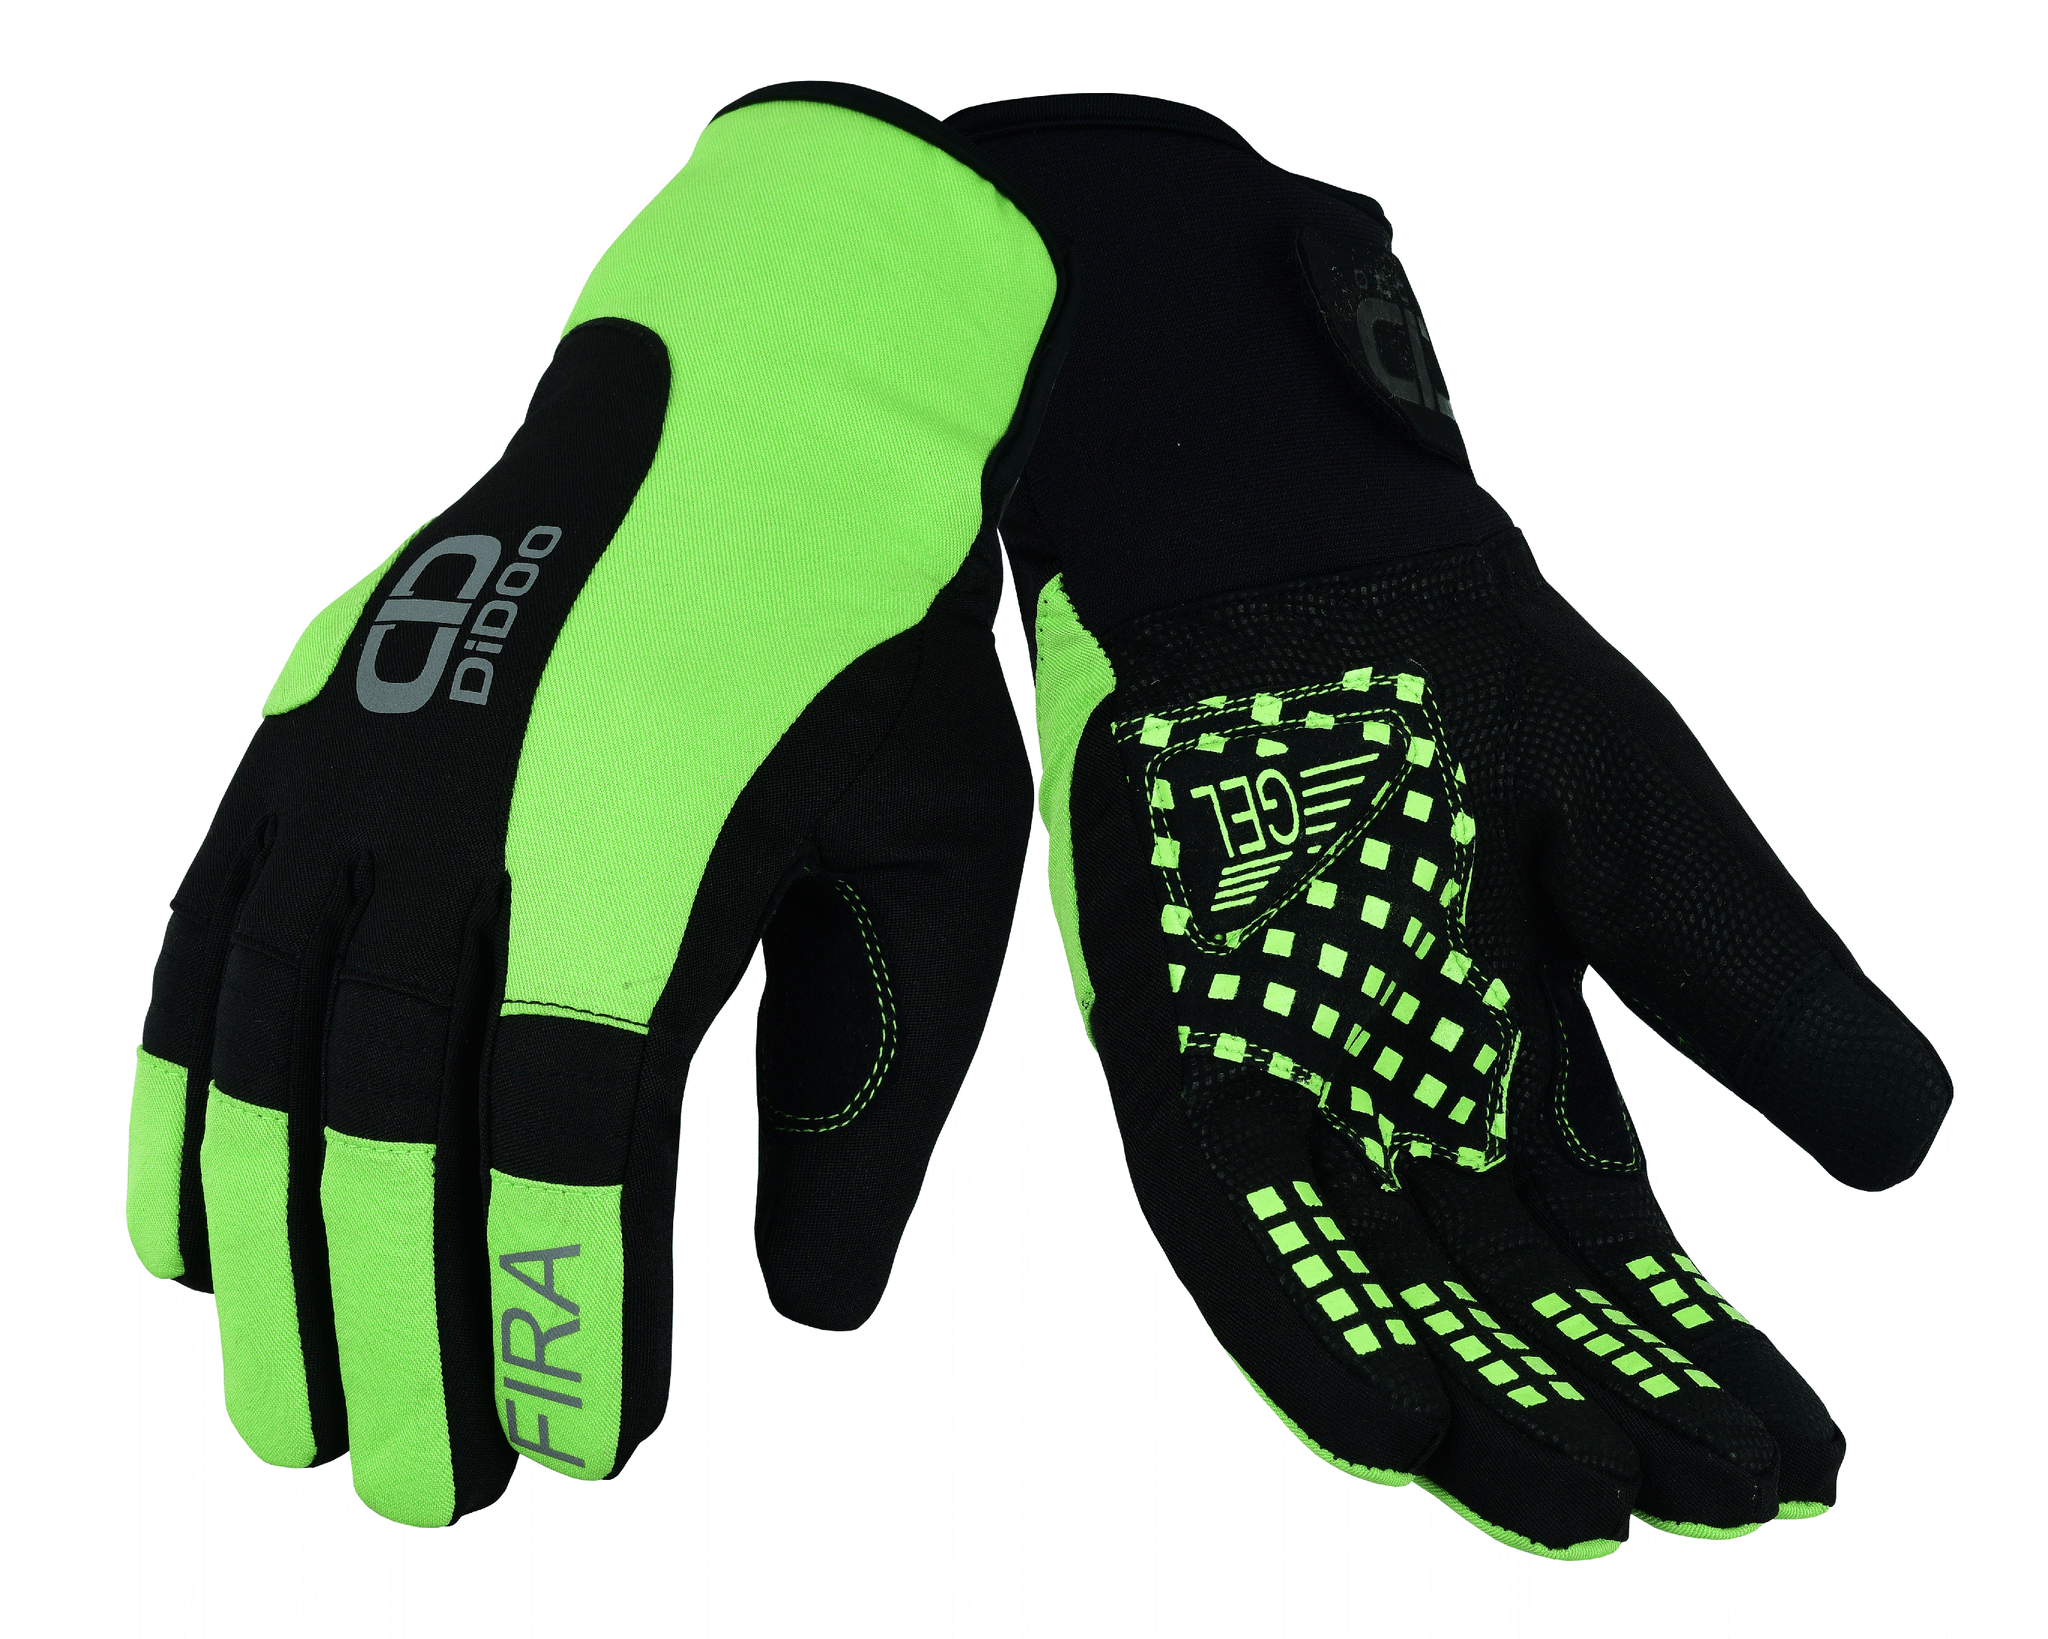 Men's waterproof cycling gloves in green & black